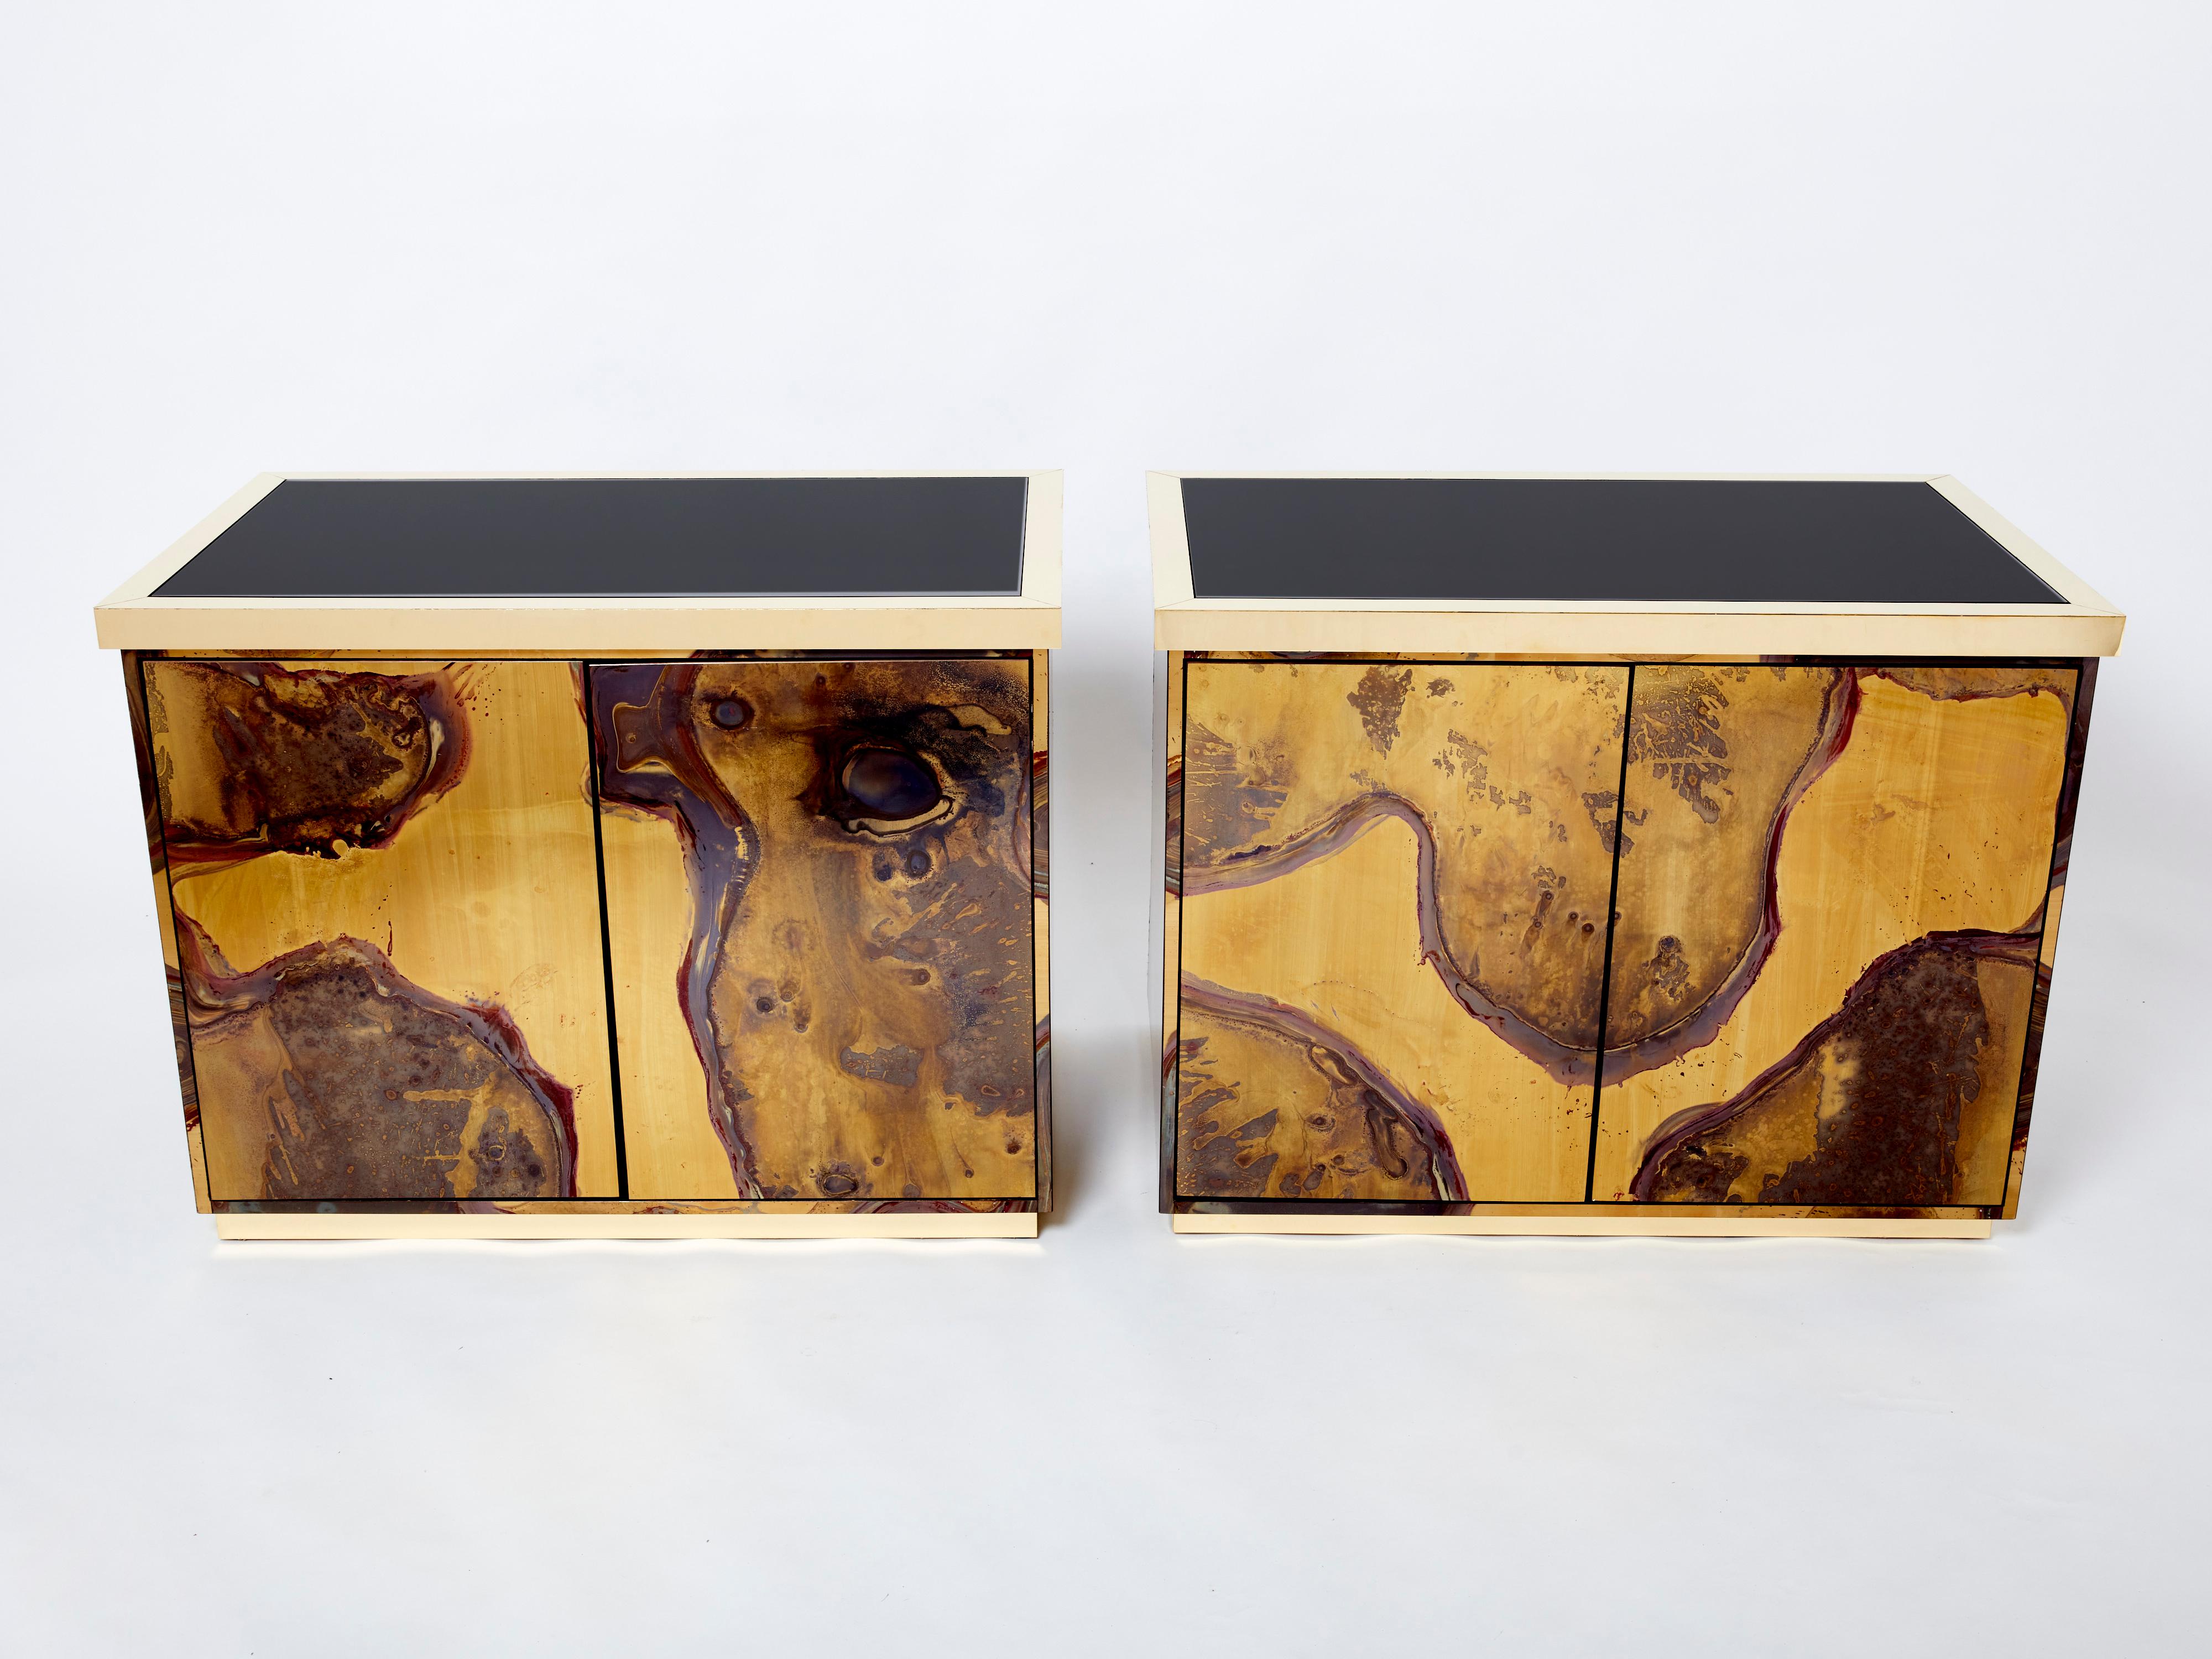 Cette paire unique d'armoires ou de buffets a été créée par Isabelle et Richard Faure pour le cabinet de design parisien Maison Honore à la fin des années 1970. Entièrement recouvert de laiton oxydé et patiné décoré sur toute sa surface, qui a